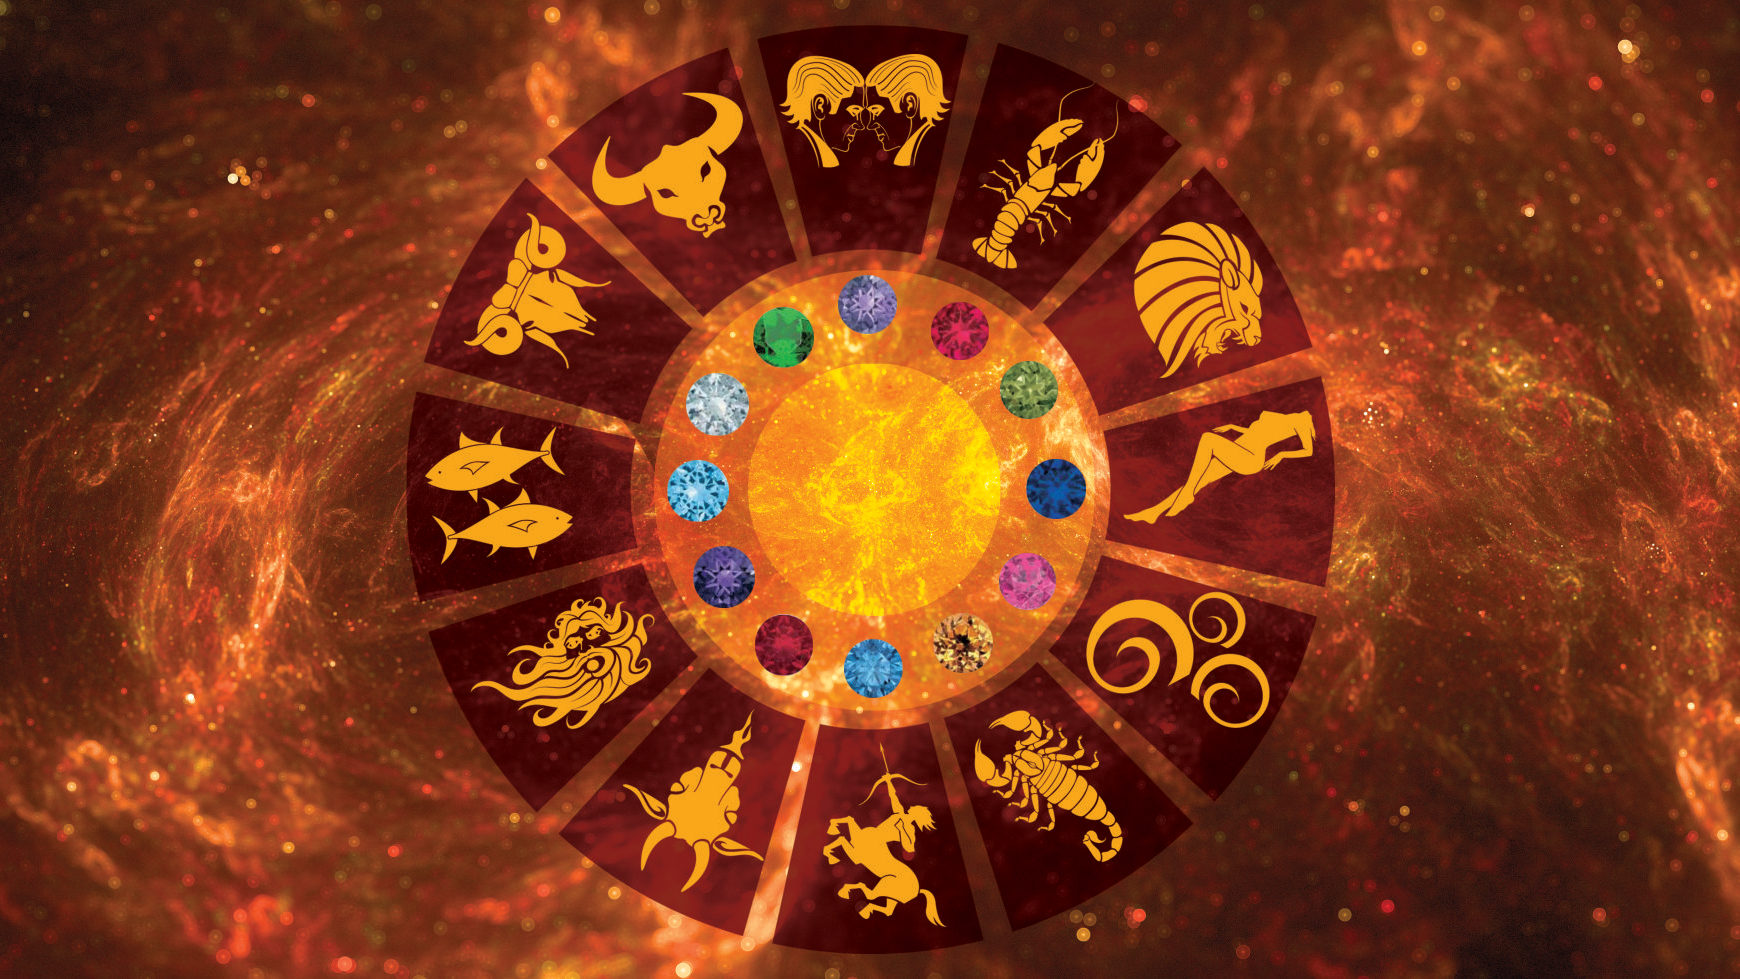 Best Astrologer in Chandigarh